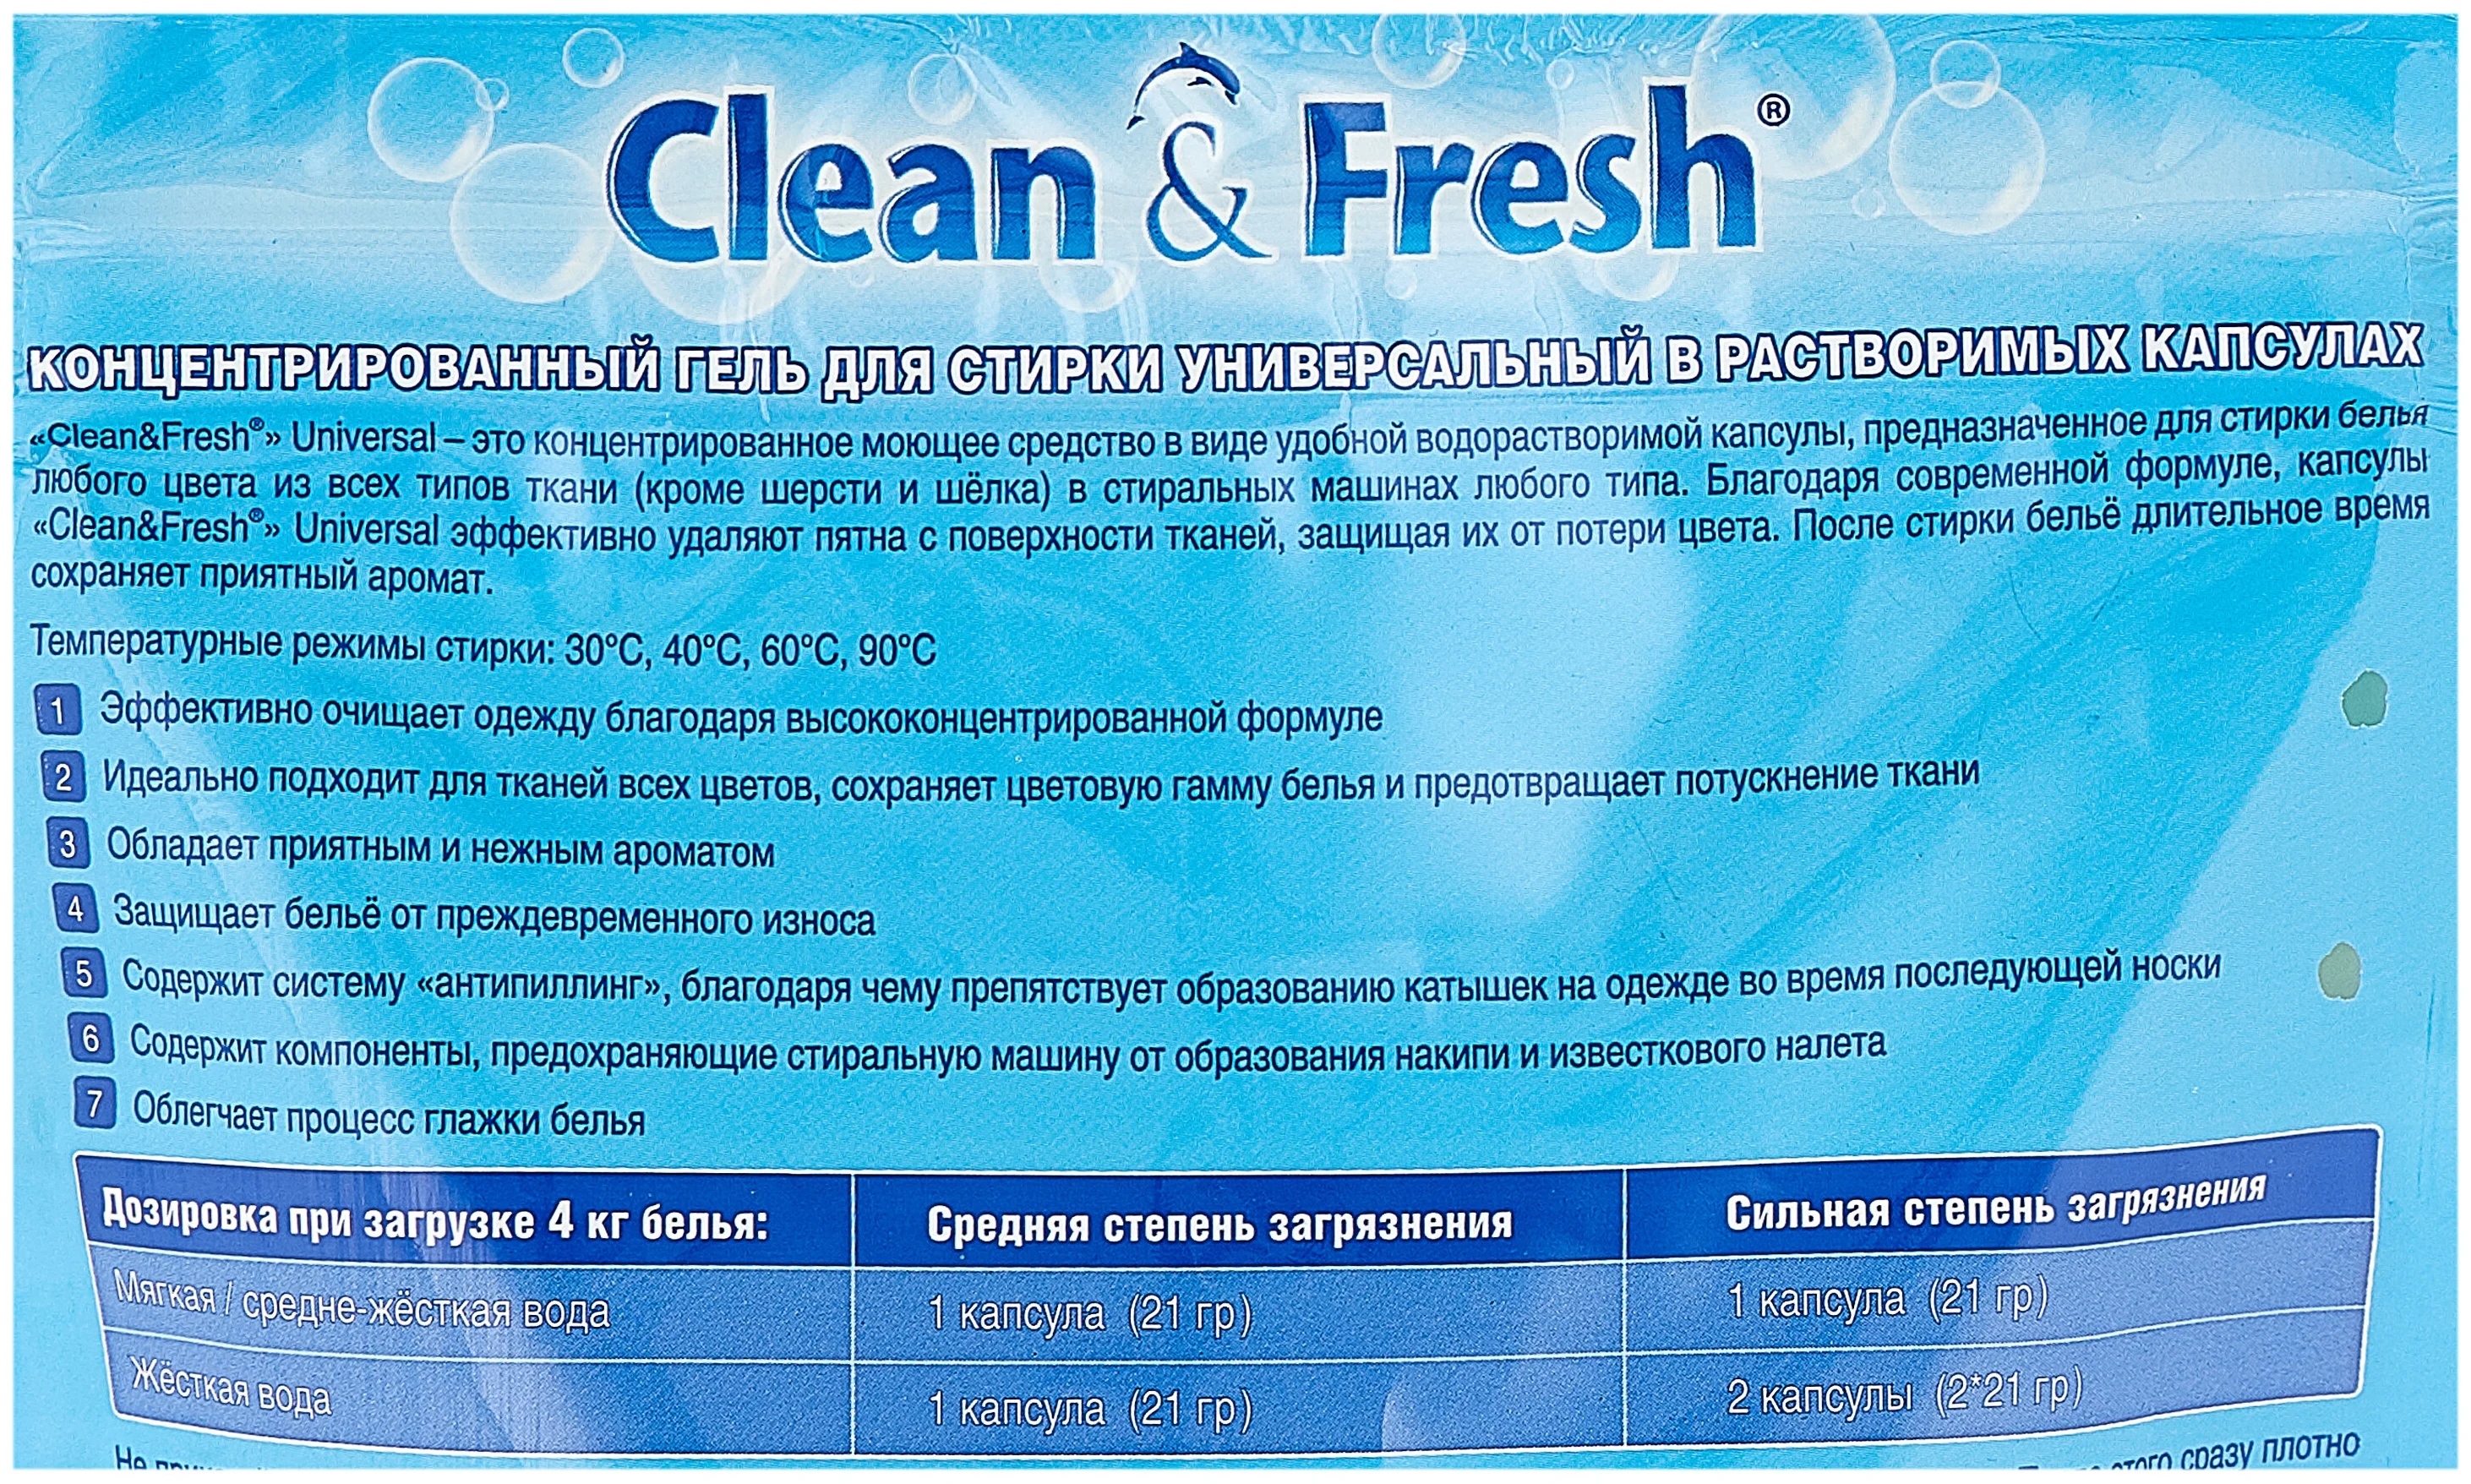 Clean & Fresh Duo Universal - содержит: пятновыводитель